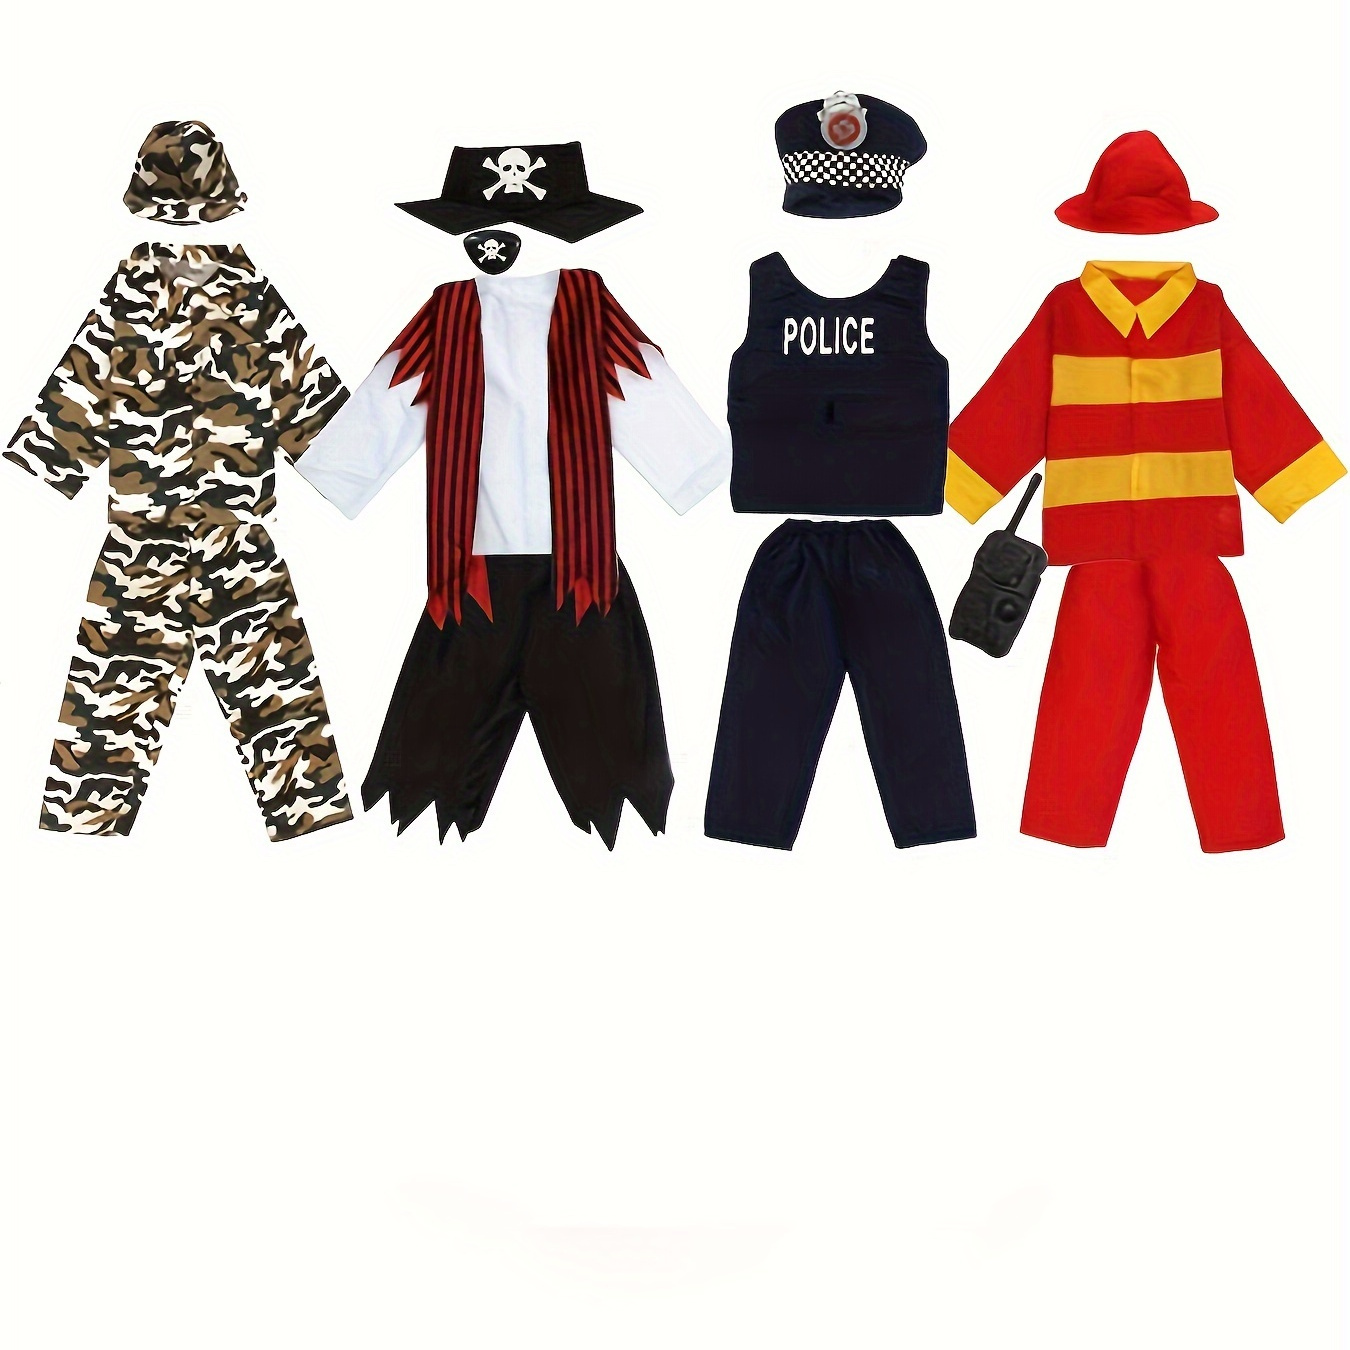 Ensemble De Costumes De Jeu De Rôle 15 Pièces, Costume De Pirate, Policier,  Soldat, Pompier Pour Enfants, Adapté Aux Enfants De 3 À 6 Ans